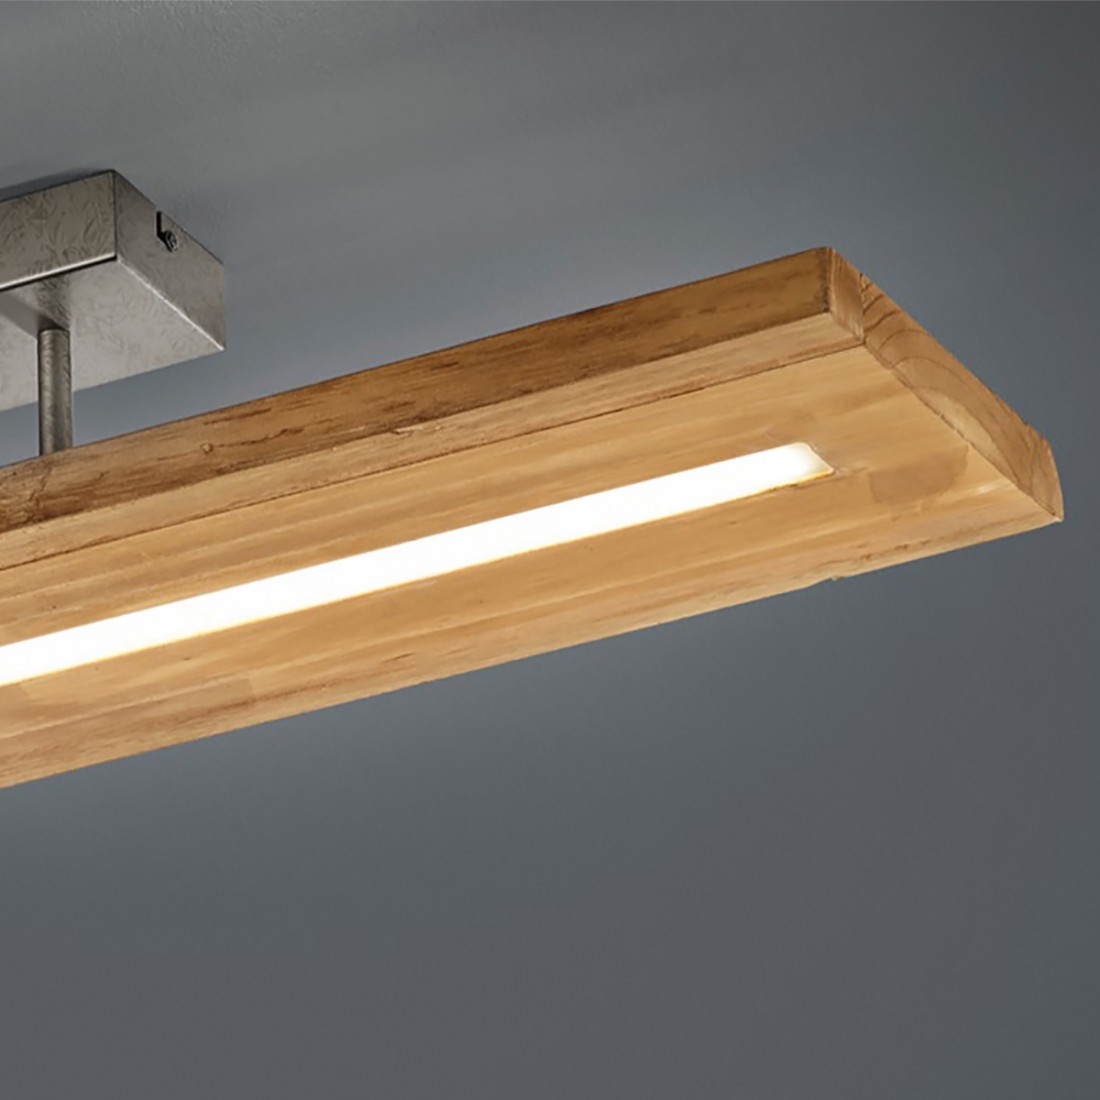 Brad 623710130 Trio Lighting lámpara de techo LED regulable de madera